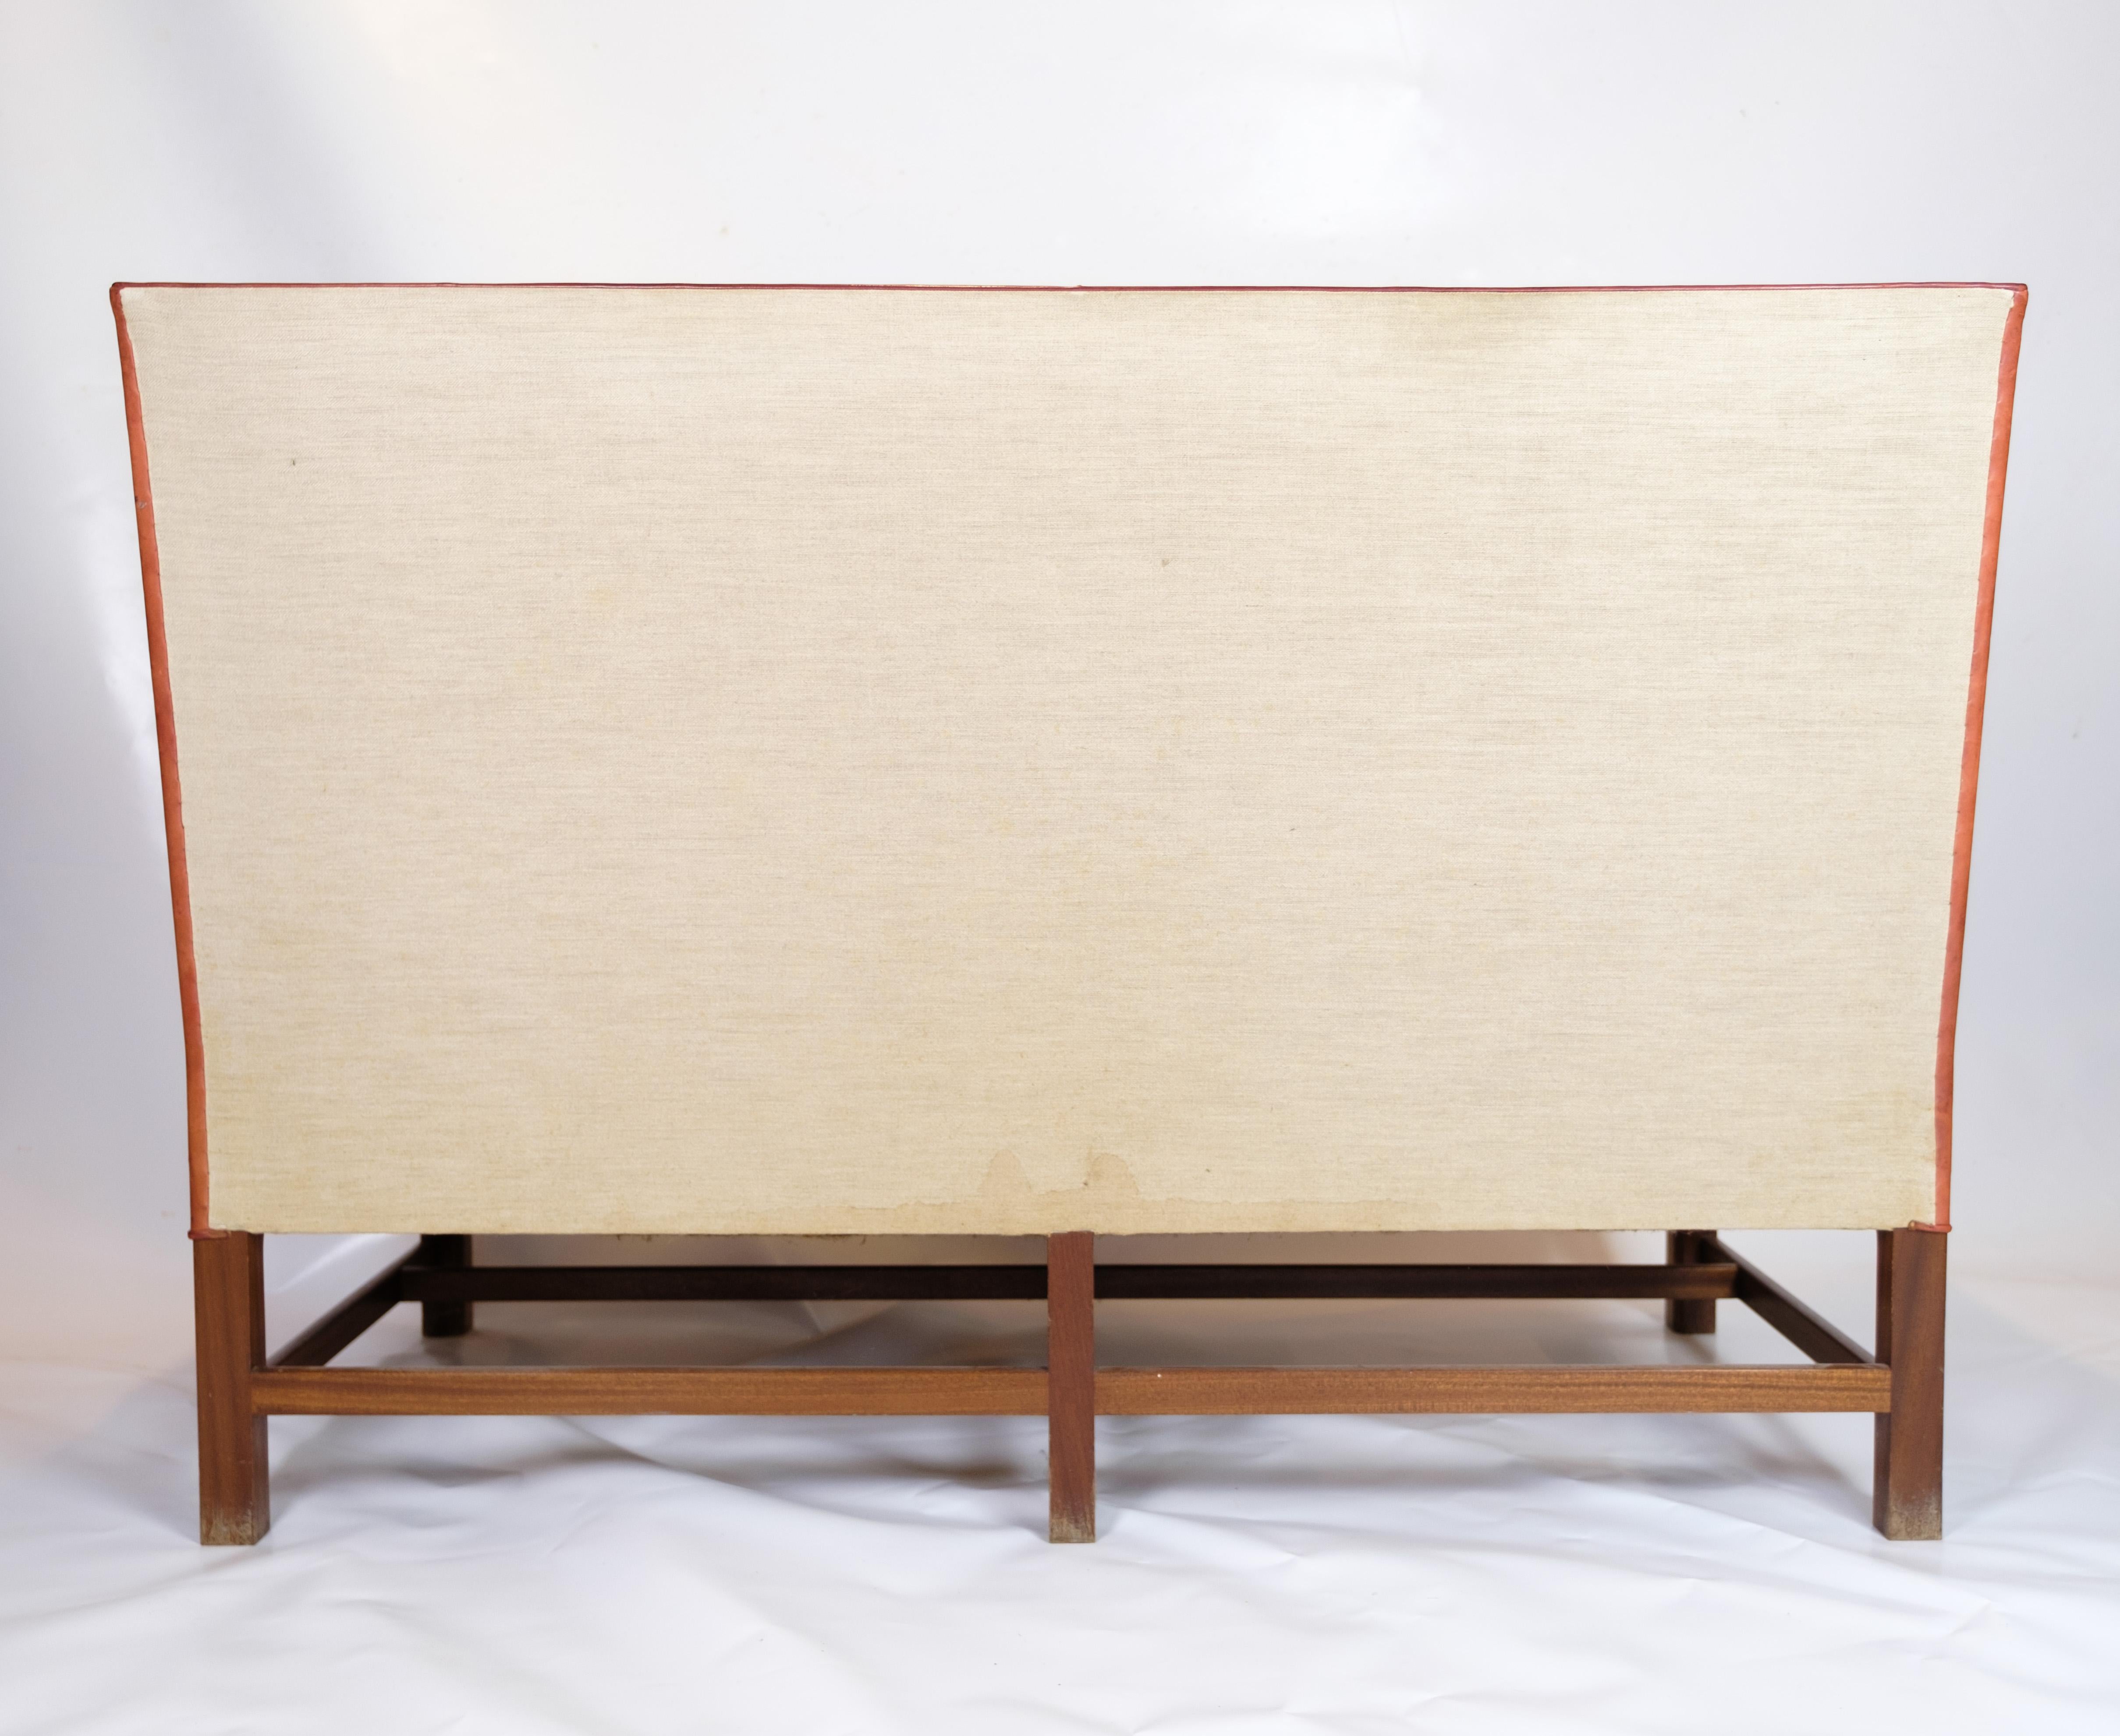 Le canapé deux places design vintage modèle 5011 créé par Kaare Klint. Cette pièce emblématique est fabriquée en cuir cognac d'origine et présente une base distinctive à six pieds en acajou. Le canapé a été reconnu après avoir été présenté à